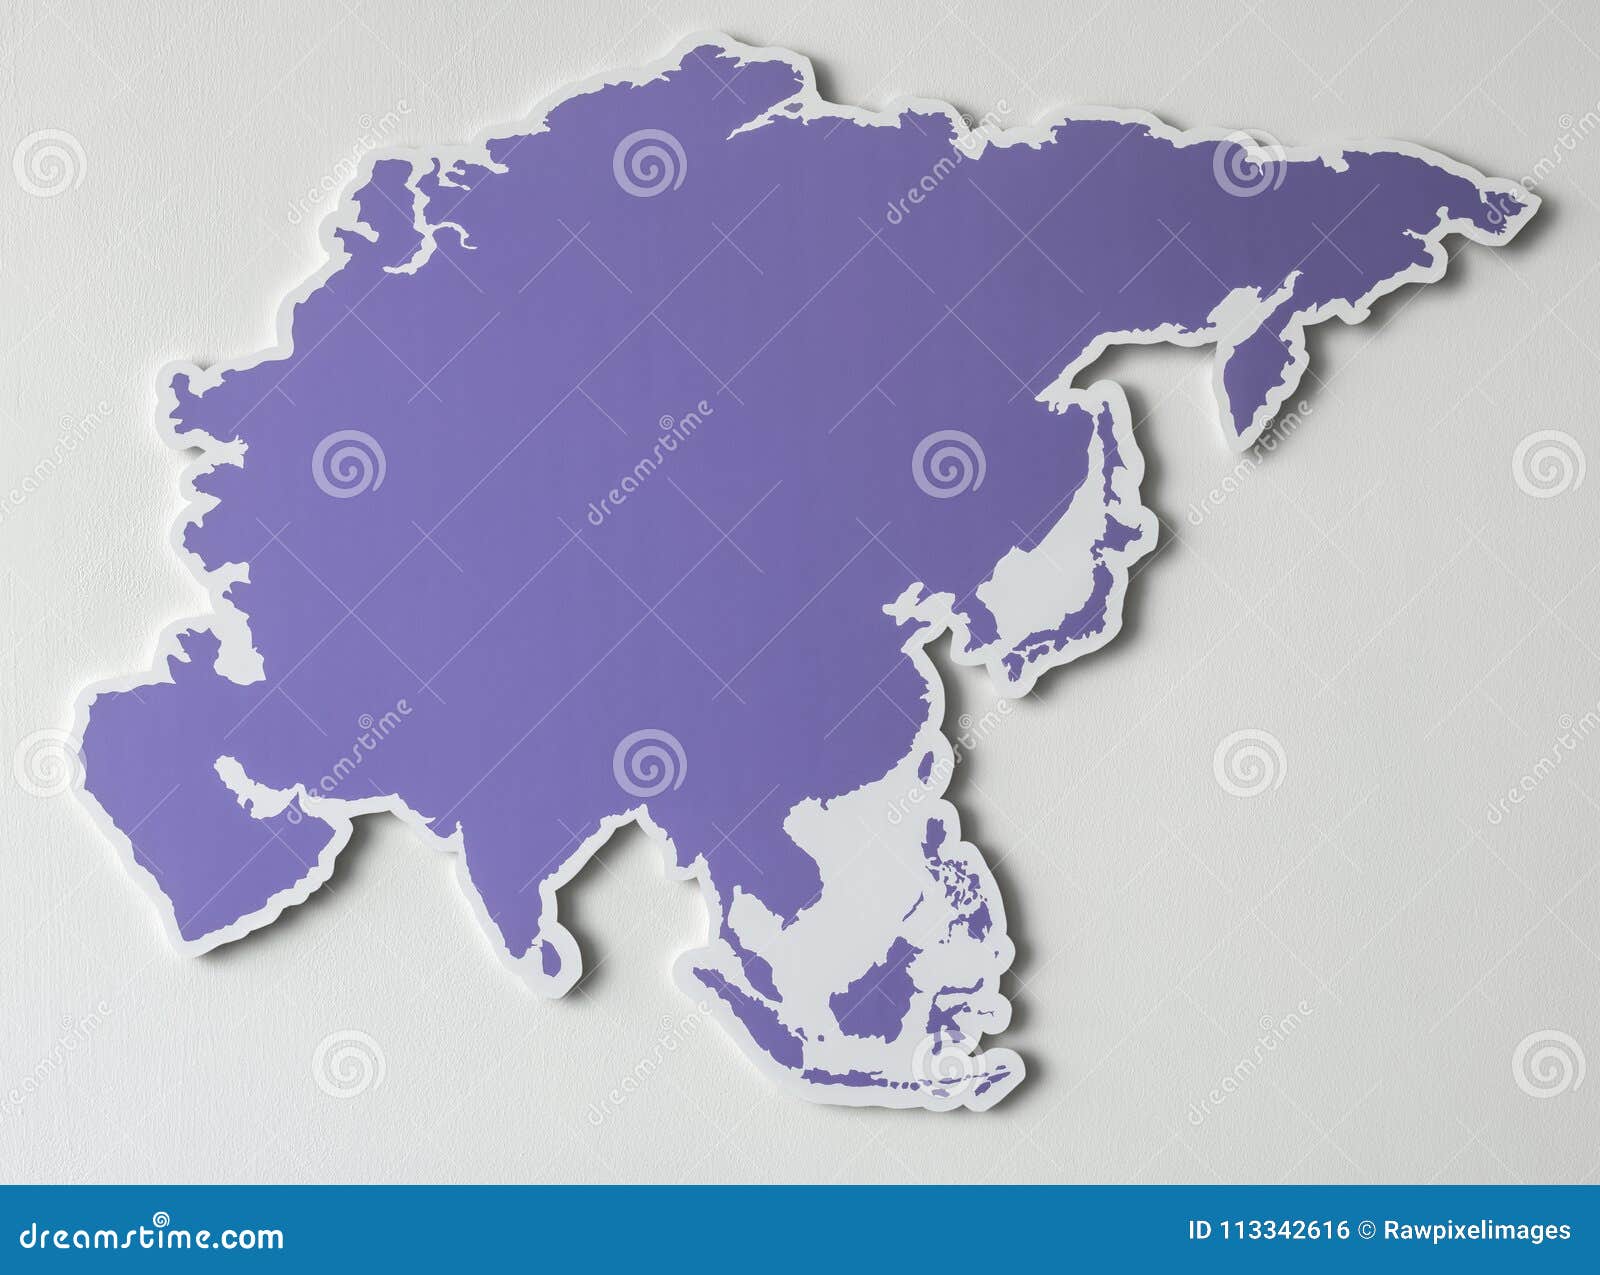 Восточный материк россии. Азиатский Континент. Карта Азийского континента. Контур Континент Азия на белом фоне. Фиолетовая карта Евразии.